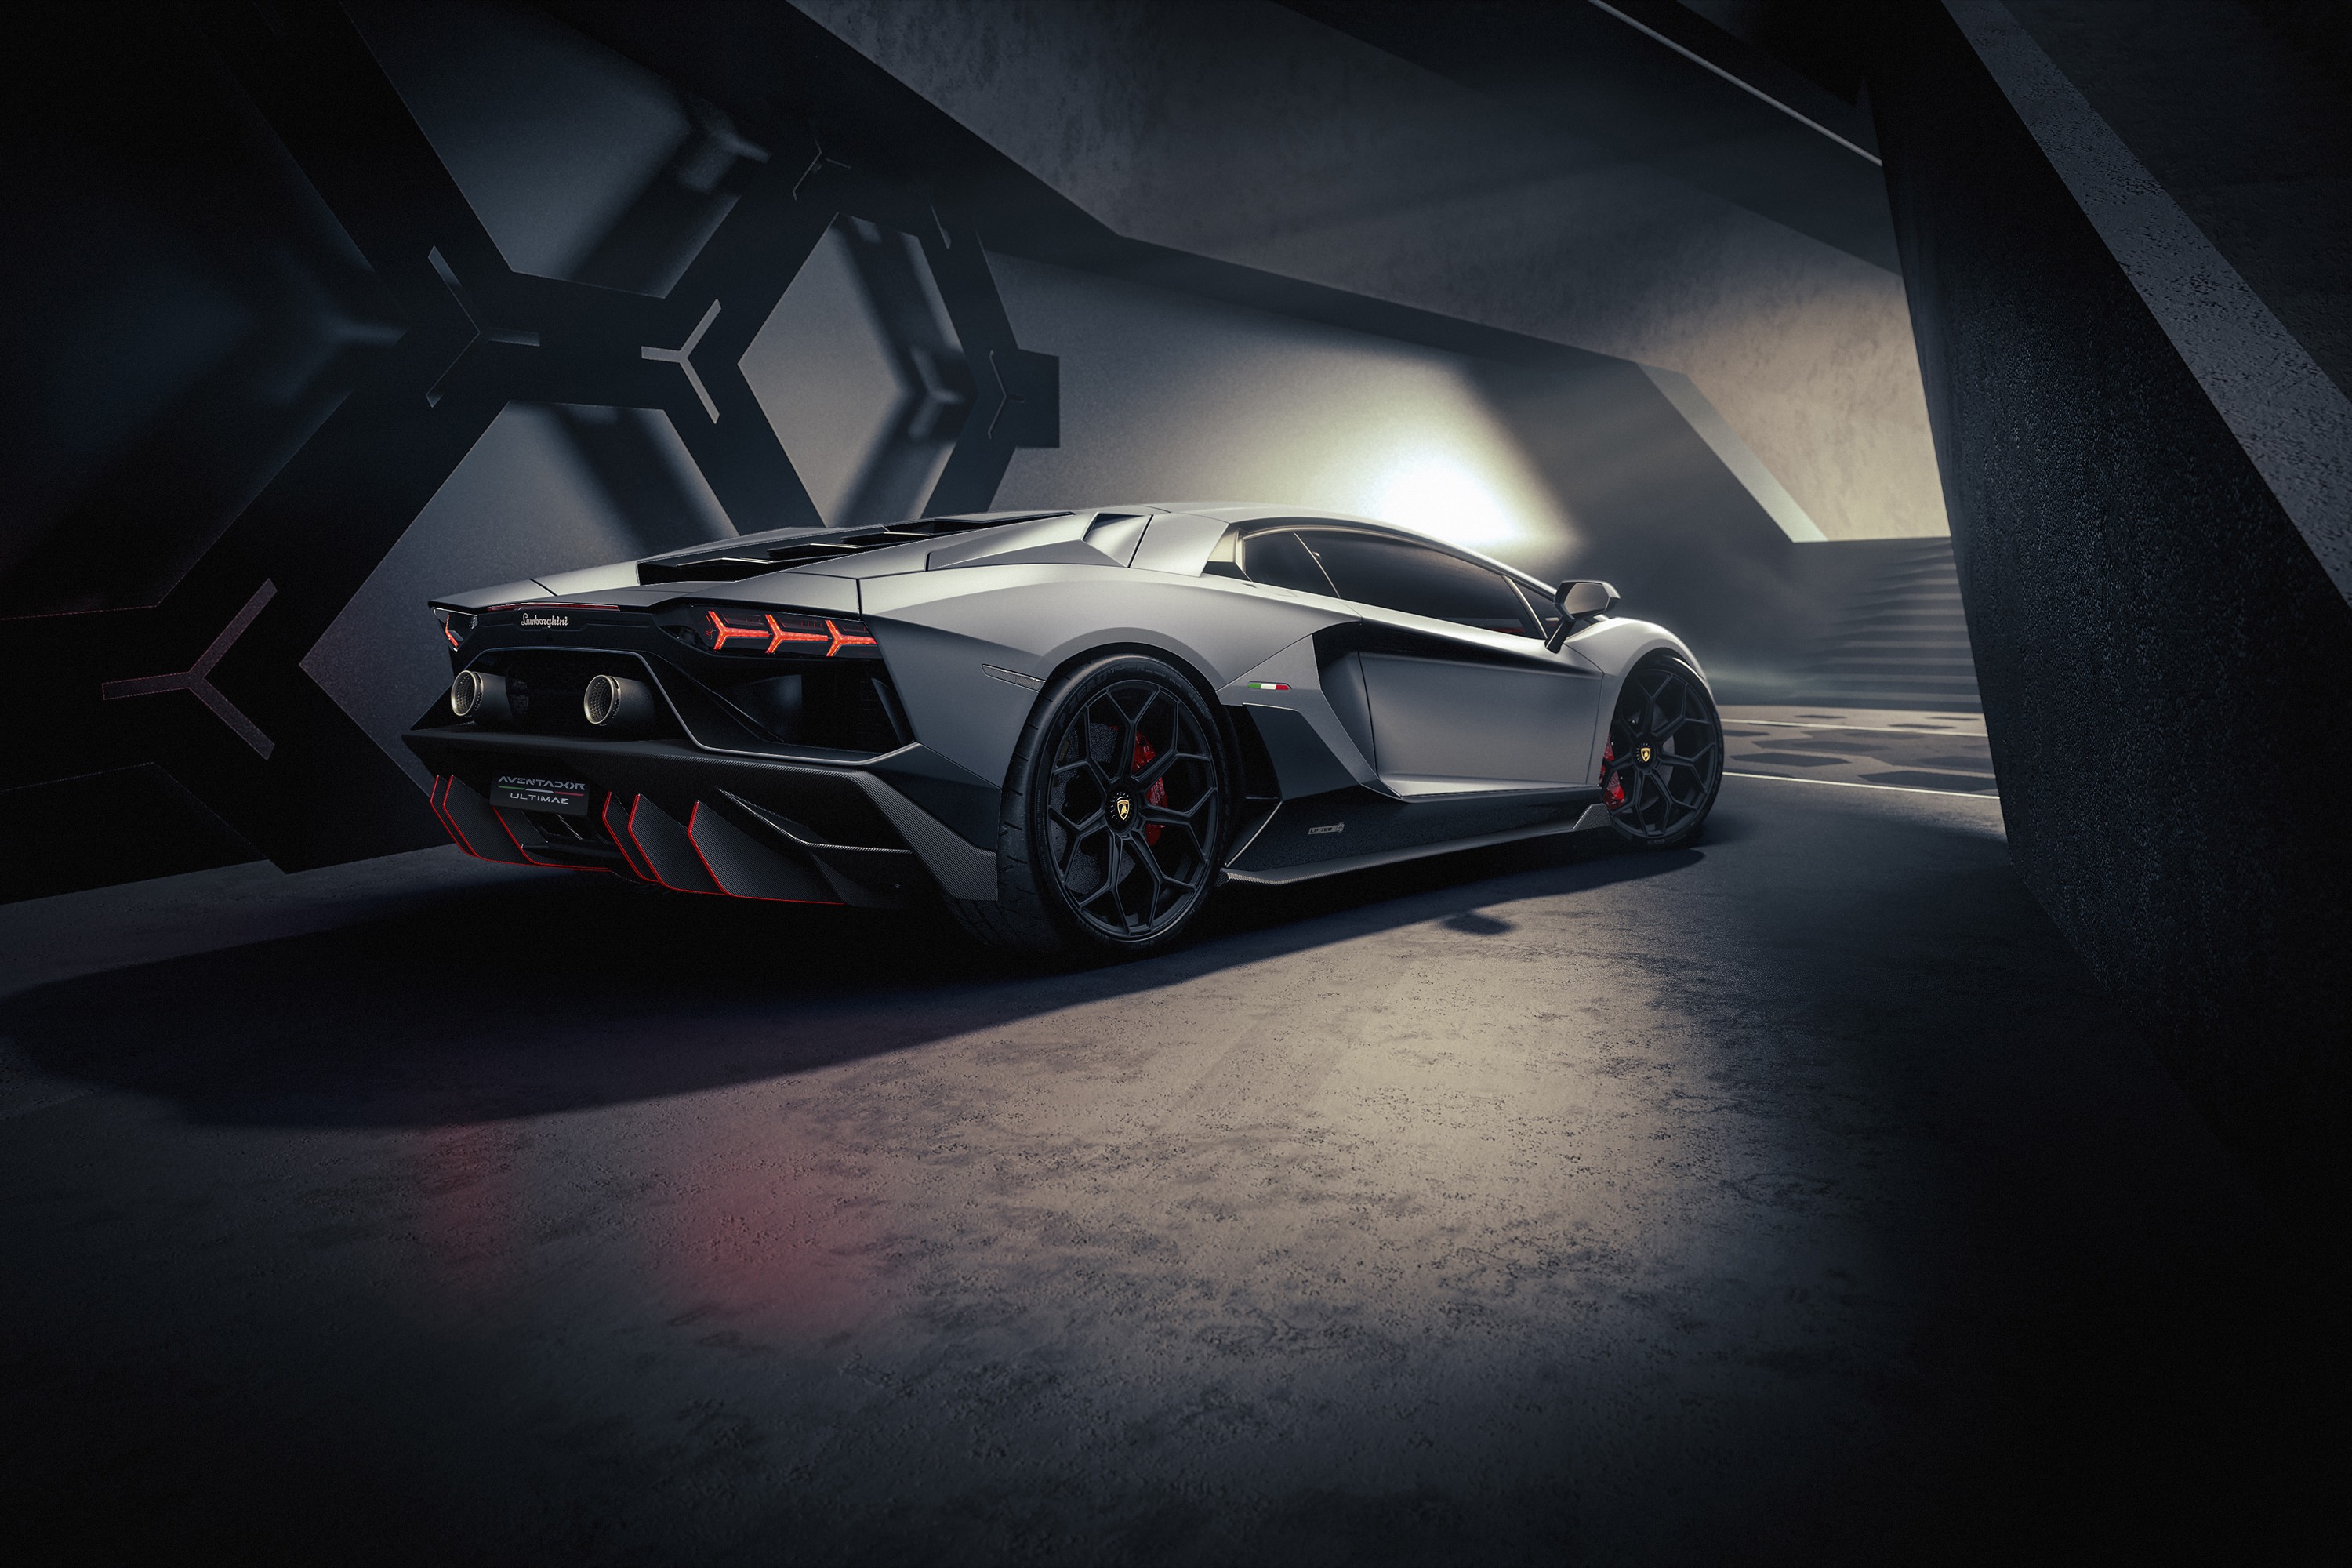 Lamborghini Aventador - biểu tượng của sự sang trọng và đẳng cấp. Với những hình ảnh đỉnh cao về thiết kế và công nghệ, không thể bỏ qua những bức ảnh về siêu xe này!